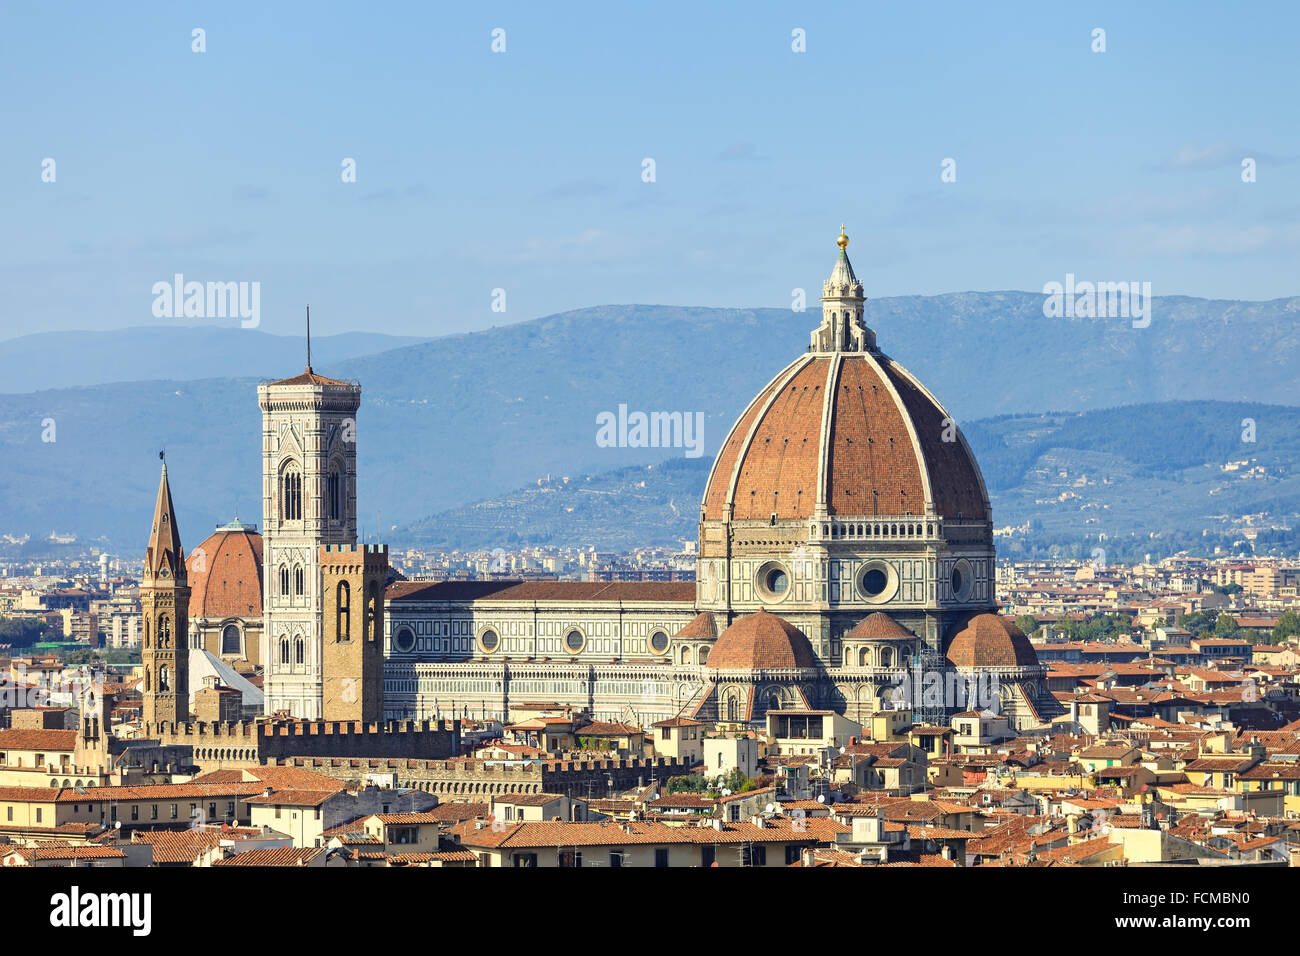 Florencia, la Catedral, la Basílica de Santa Maria del Fiore, el campanile de Giotto landmark y vista panorámica desde el parque Miguel Ángel squ Foto de stock